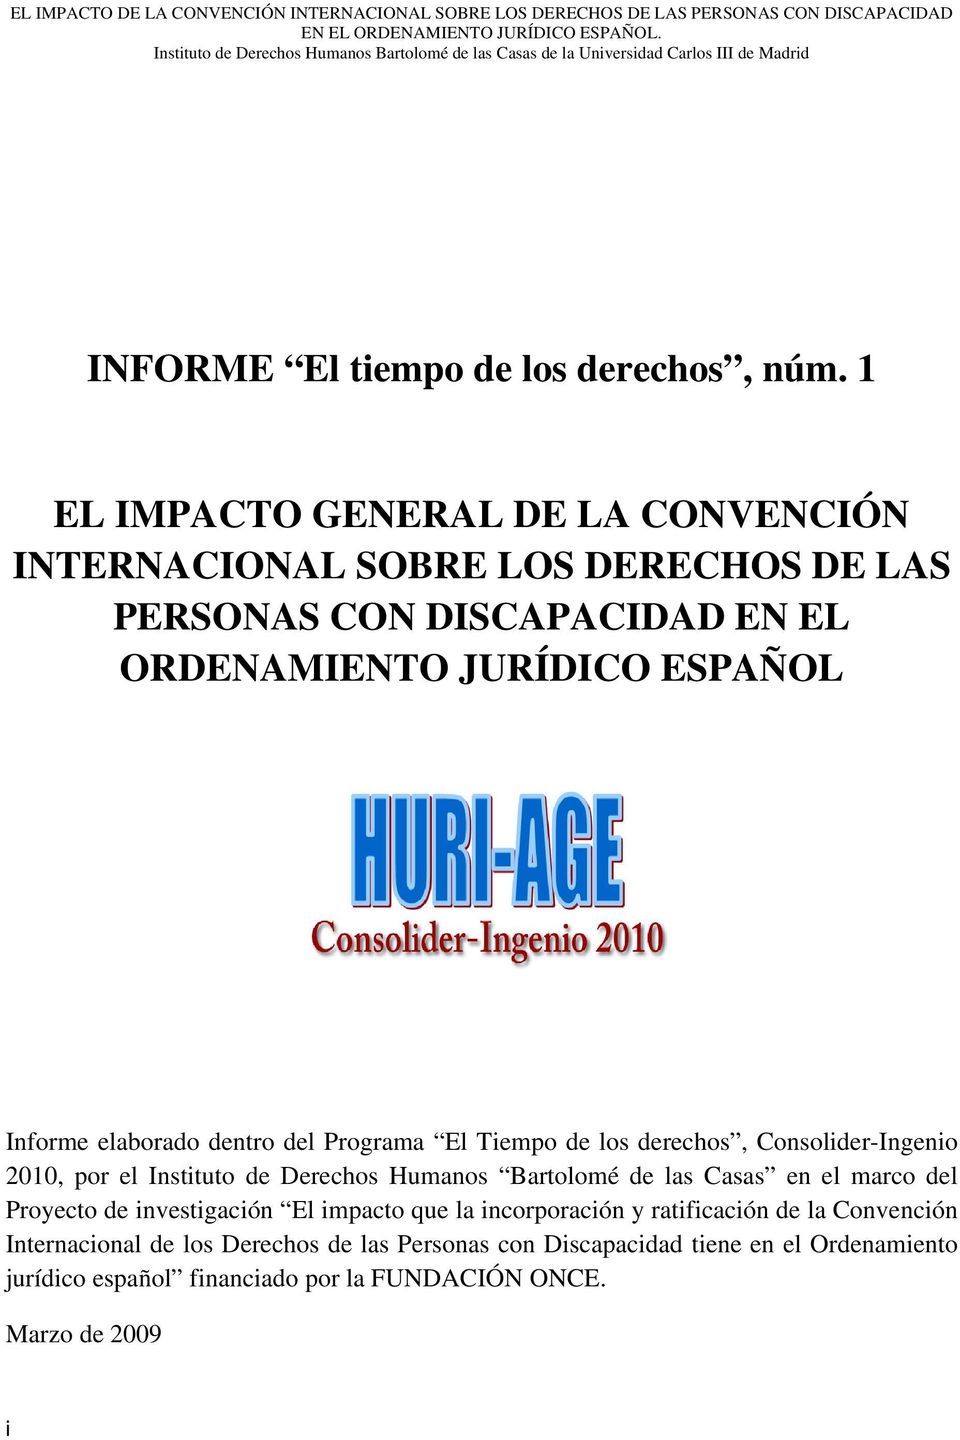 Programa El Tiempo de los derechos, Consolider-Ingenio 2010, por el Instituto de Derechos Humanos Bartolomé de las Casas en el marco del Proyecto de investigación El